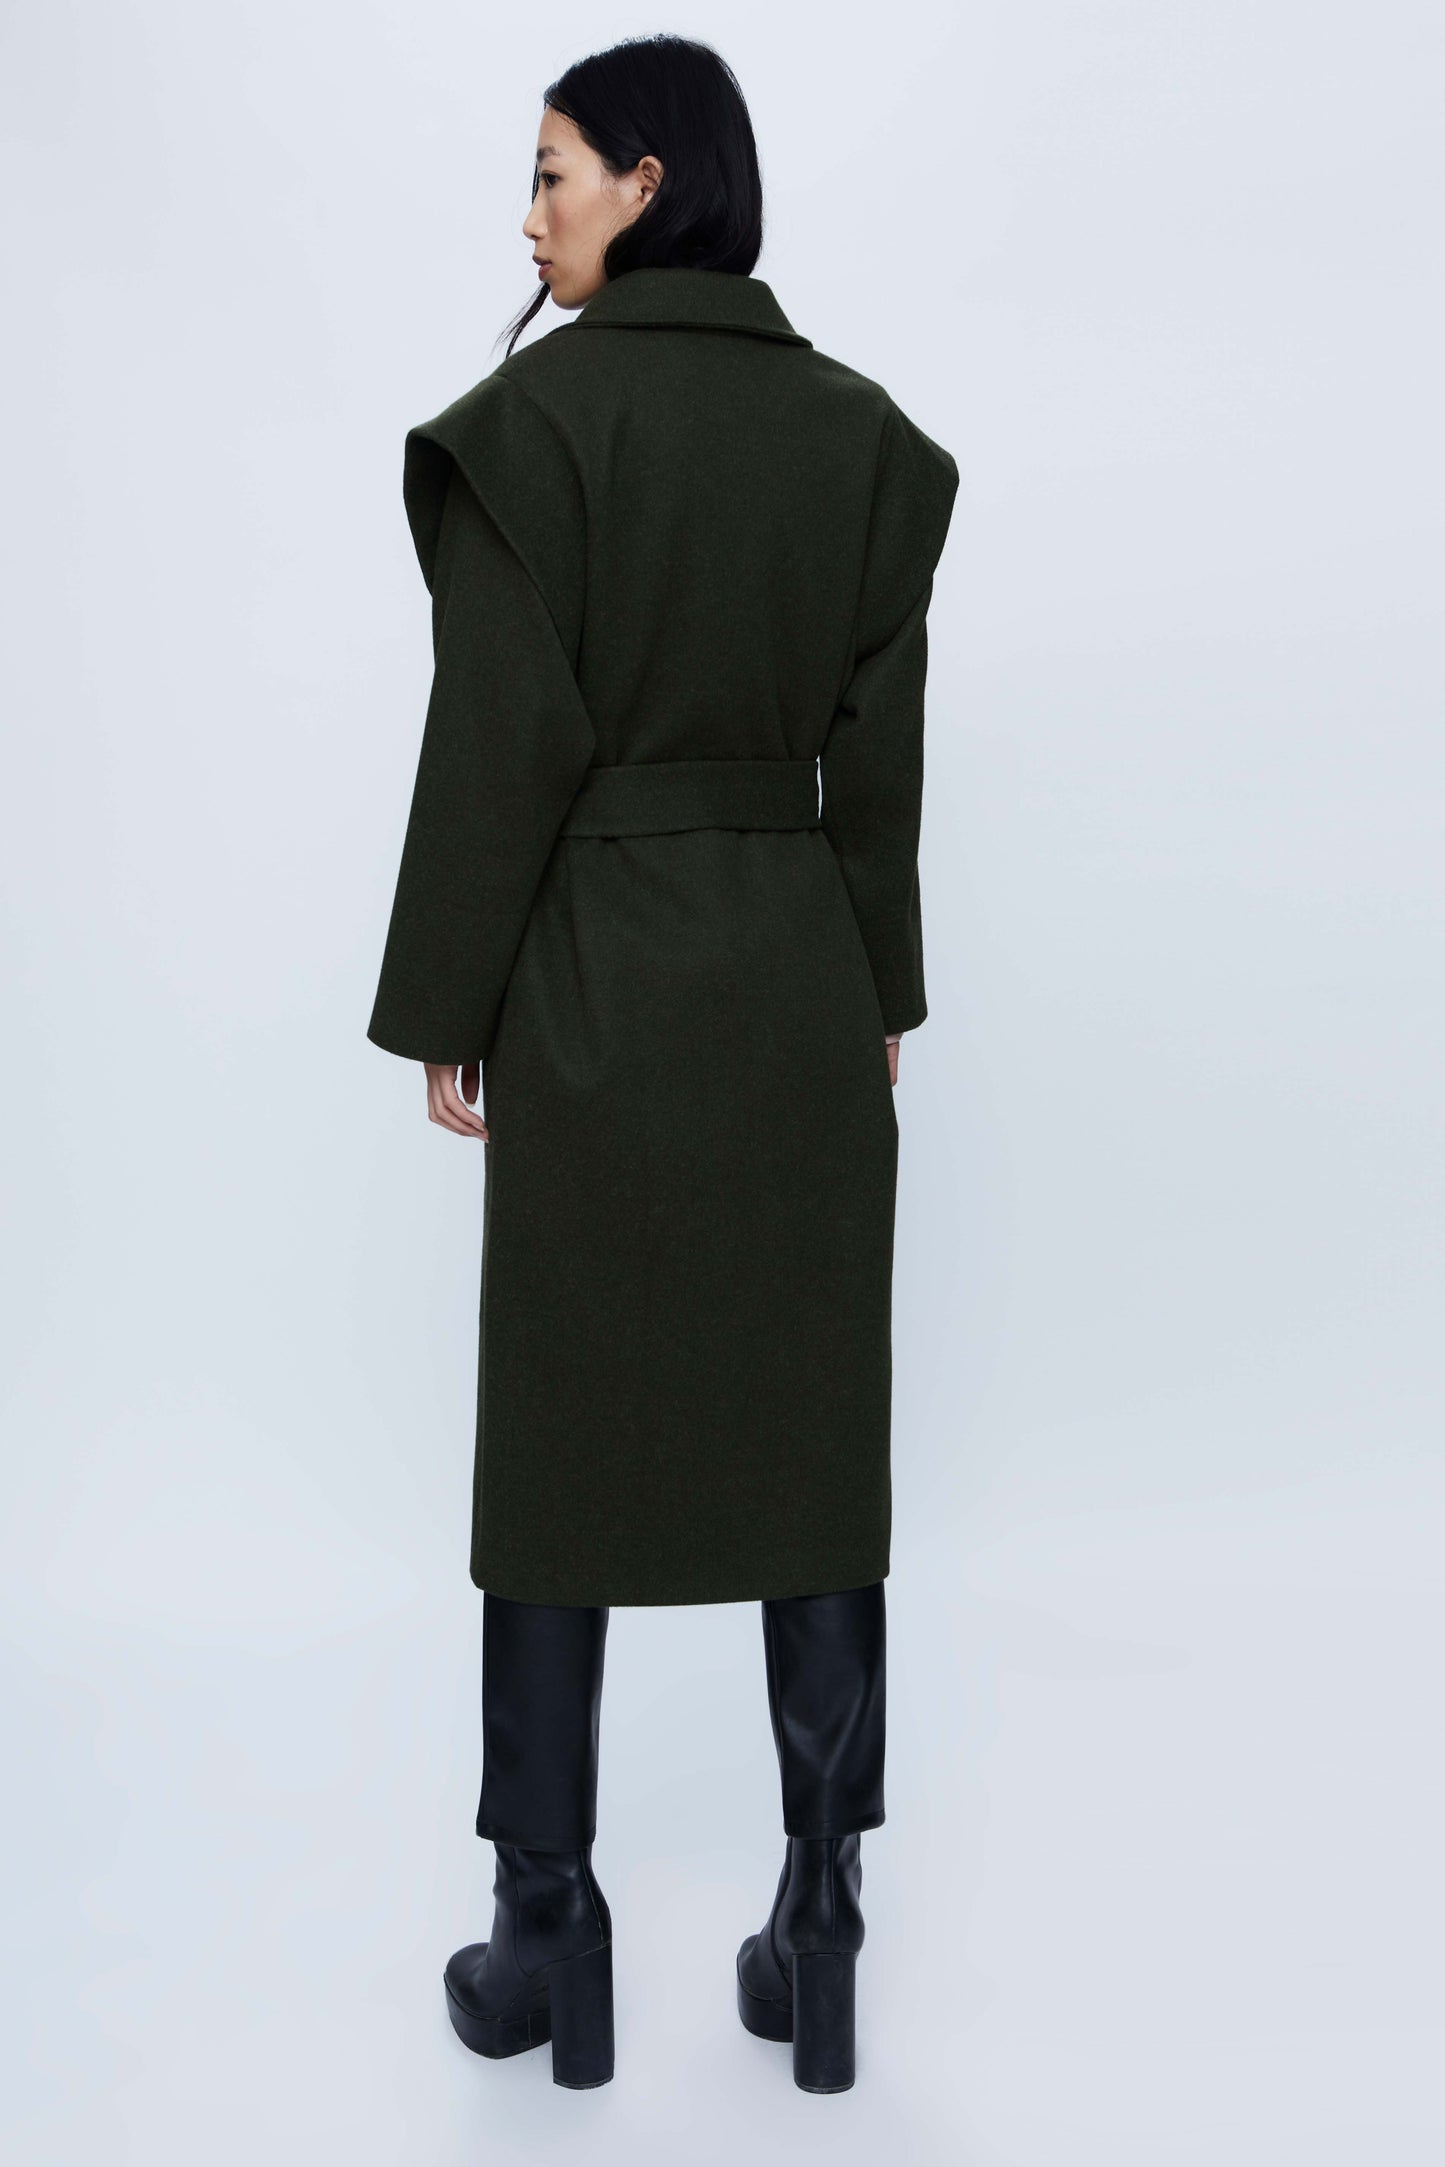 Long coat with black shoulder pads